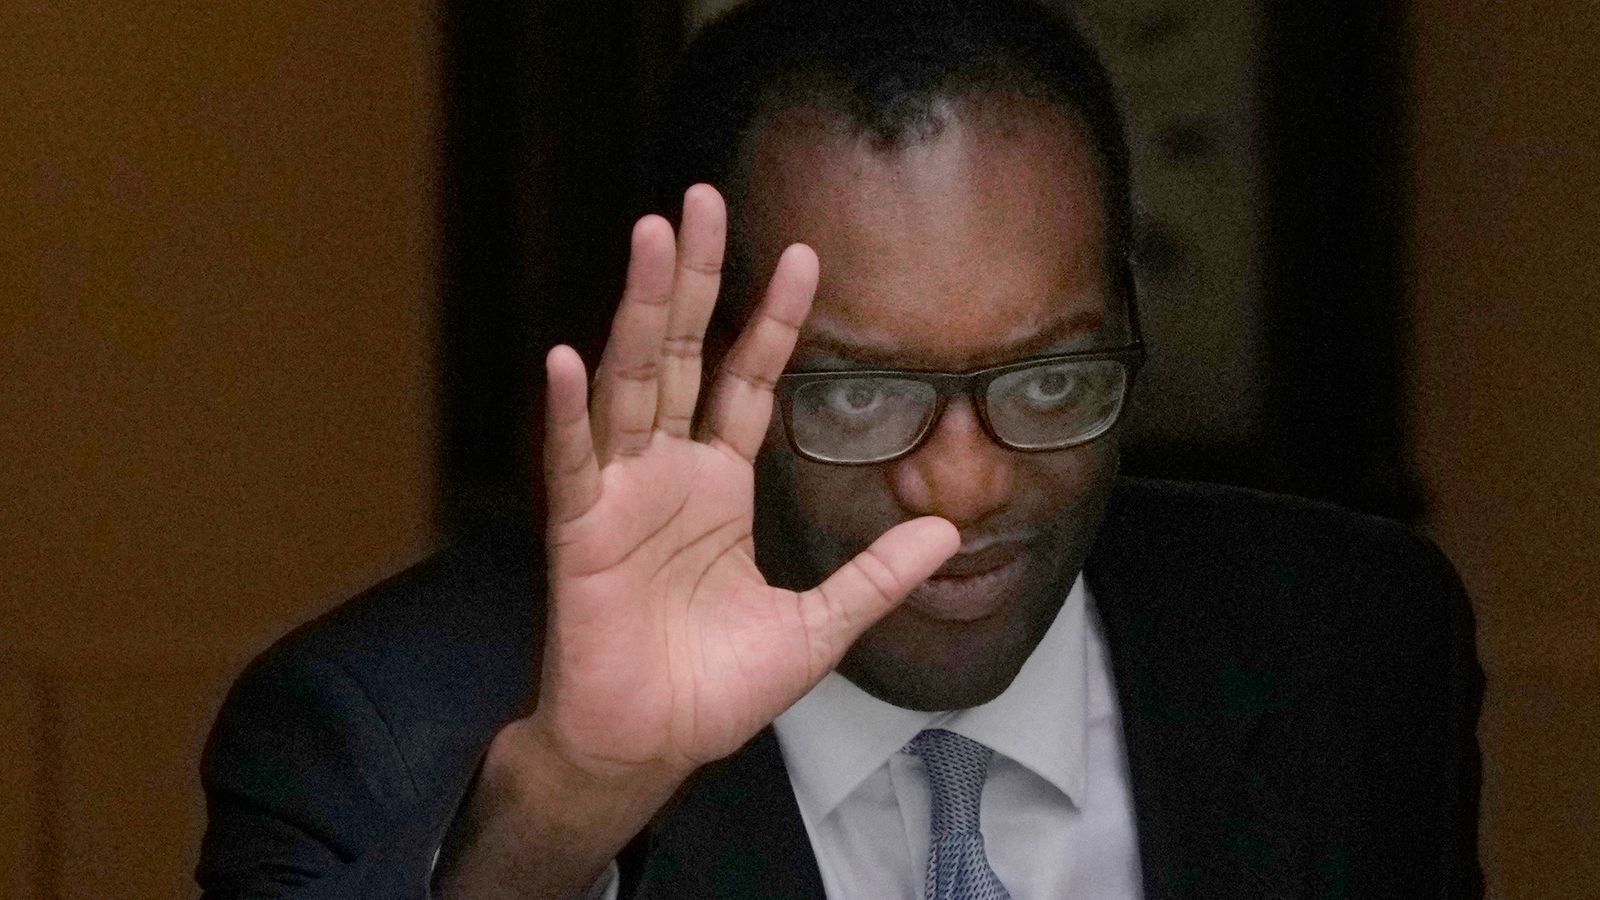 Kwasi Kwarteng warned mini-budget could trigger market backlash, say Treasury officials 